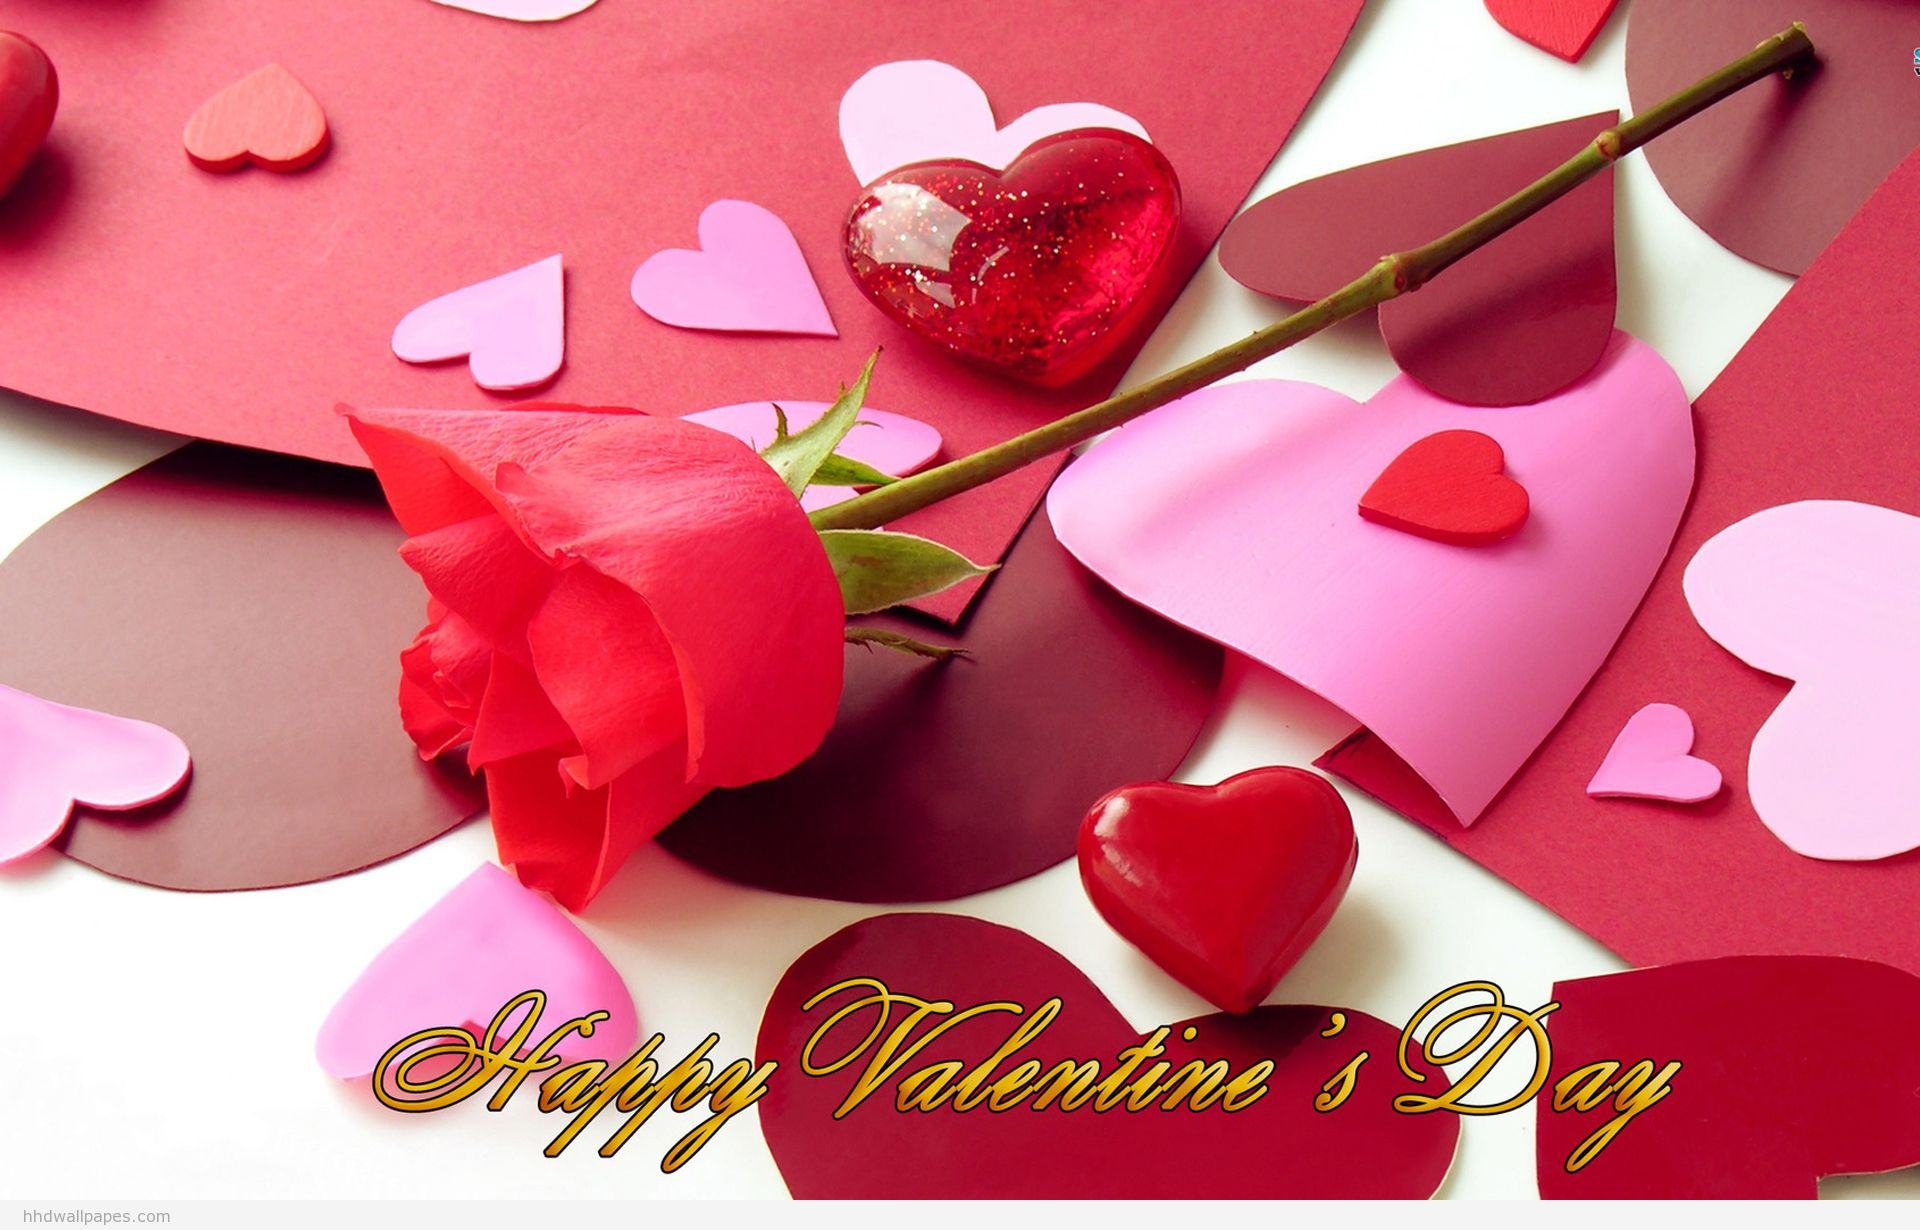 Hình ảnh Valentine là món quà tuyệt vời để chia sẻ tình yêu và hy vọng trong ngày lễ lãng mạn. Hãy xem hình ảnh Valentine để tìm hiểu những ý tưởng đặc biệt để gửi đến người mình khát khao.